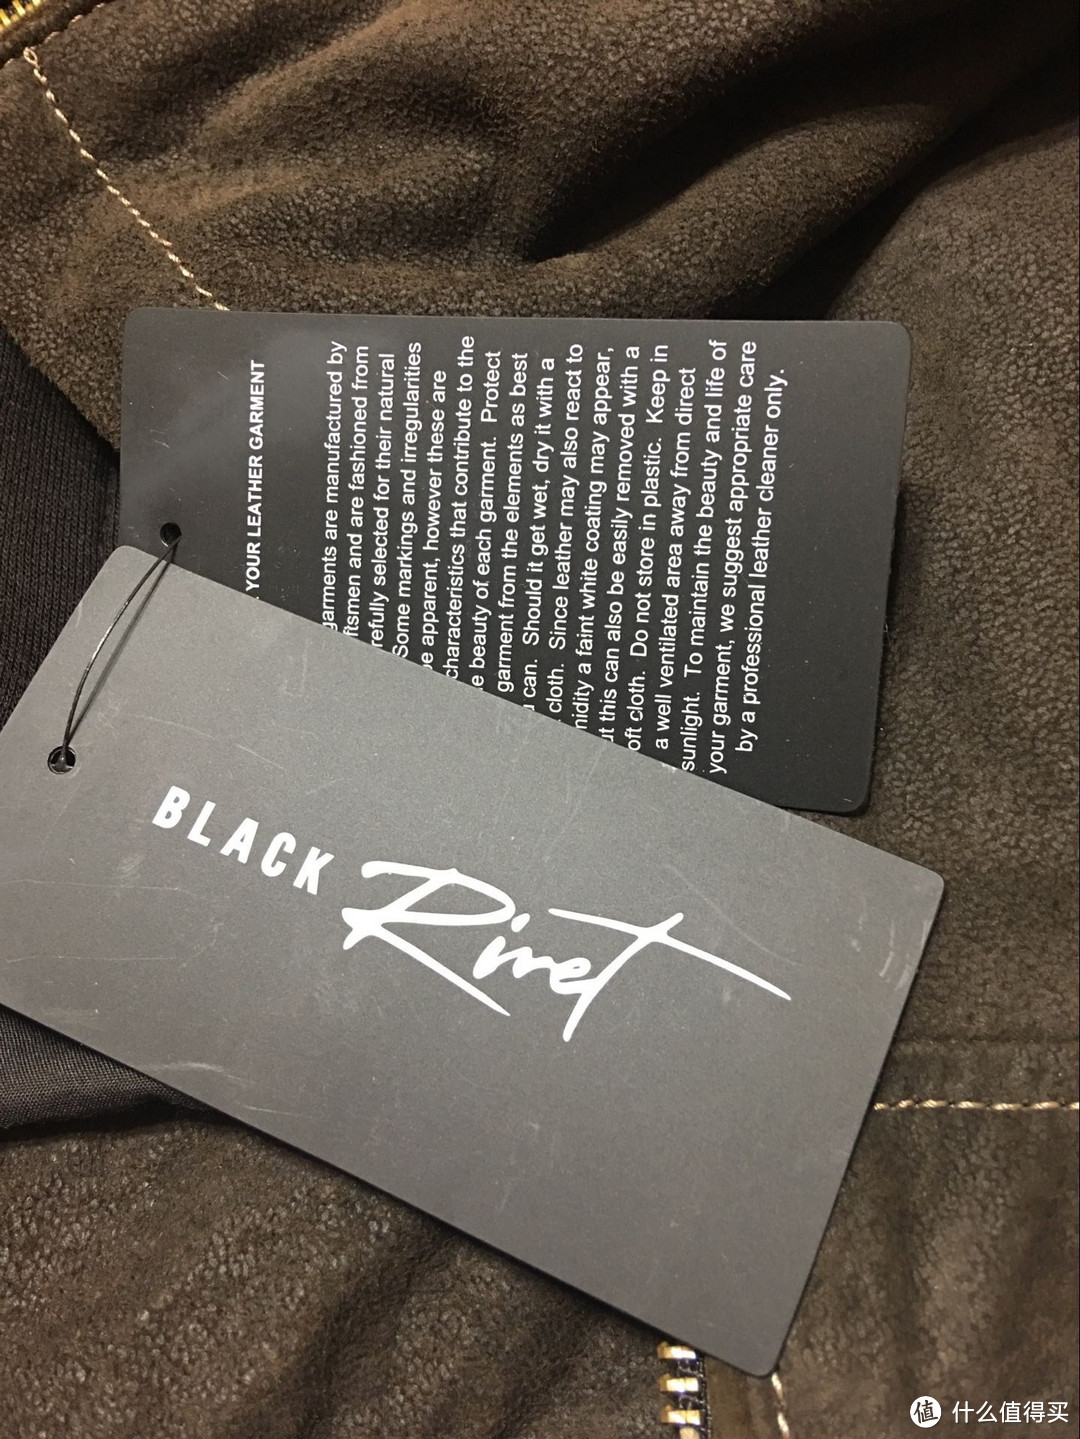 ebay上薅羊毛，59.9美元入手的Black Rivet真皮夹克（文中附有奖问答）